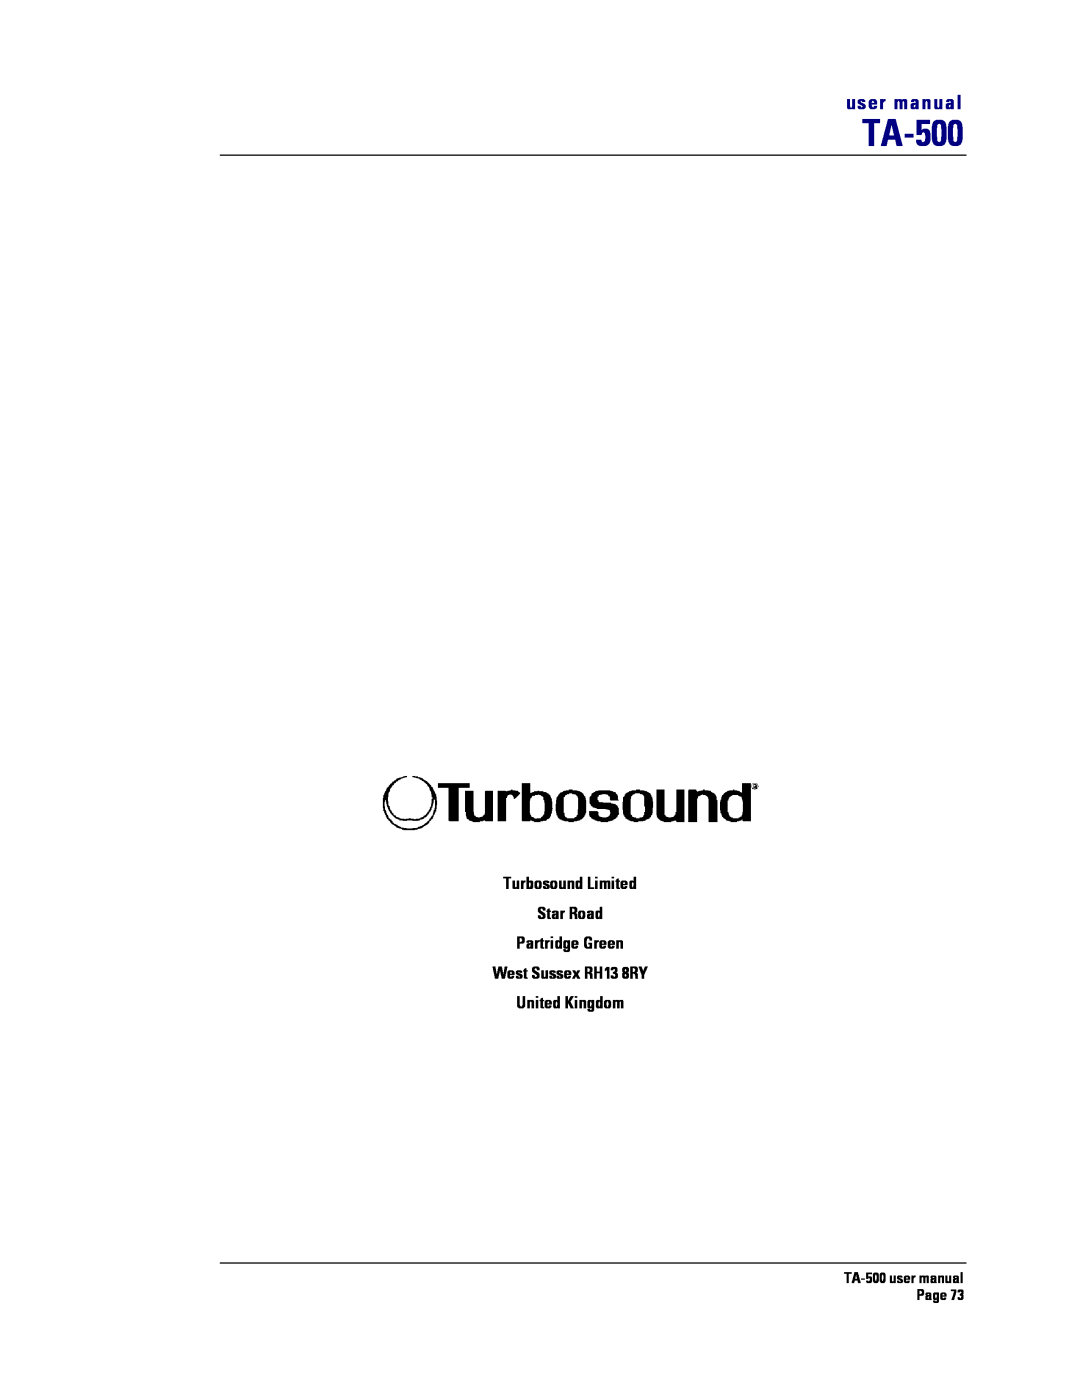 Turbosound TA-500TDP, TA-500HDP Turbosound Limited Star Road Partridge Green, West Sussex RH13 8RY United Kingdom 